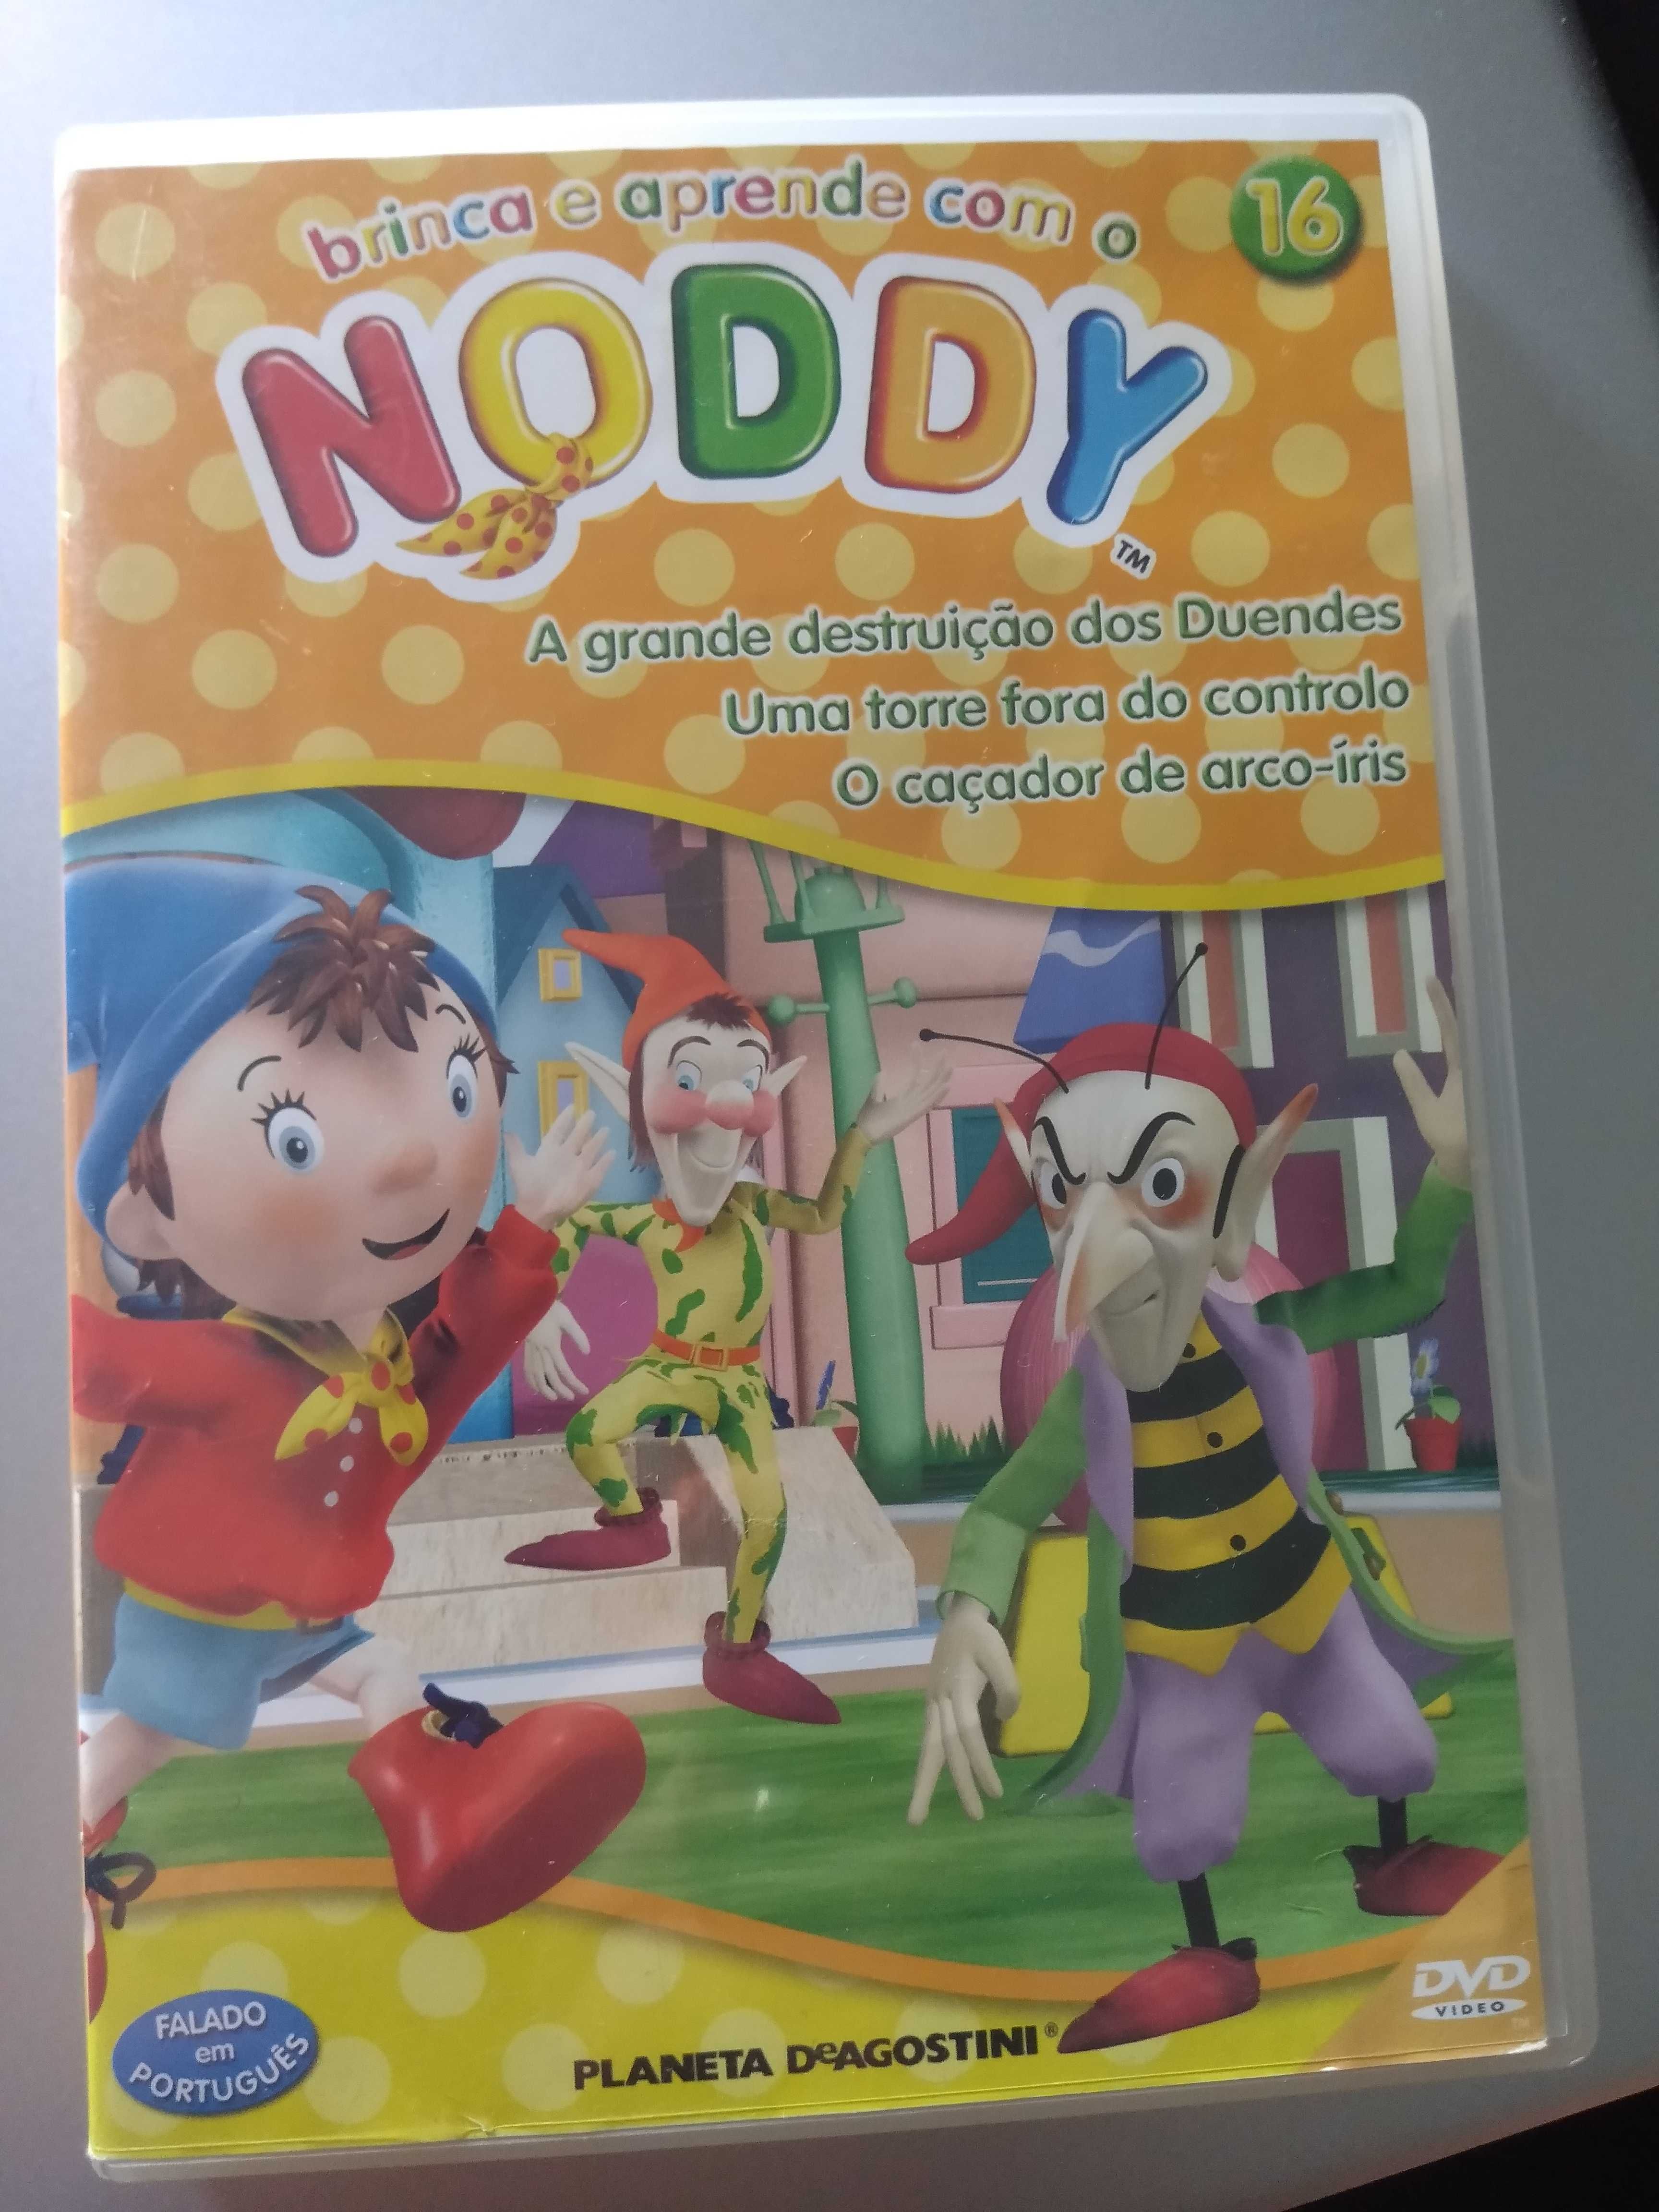 2 DVD brinca e aprende com Noddy